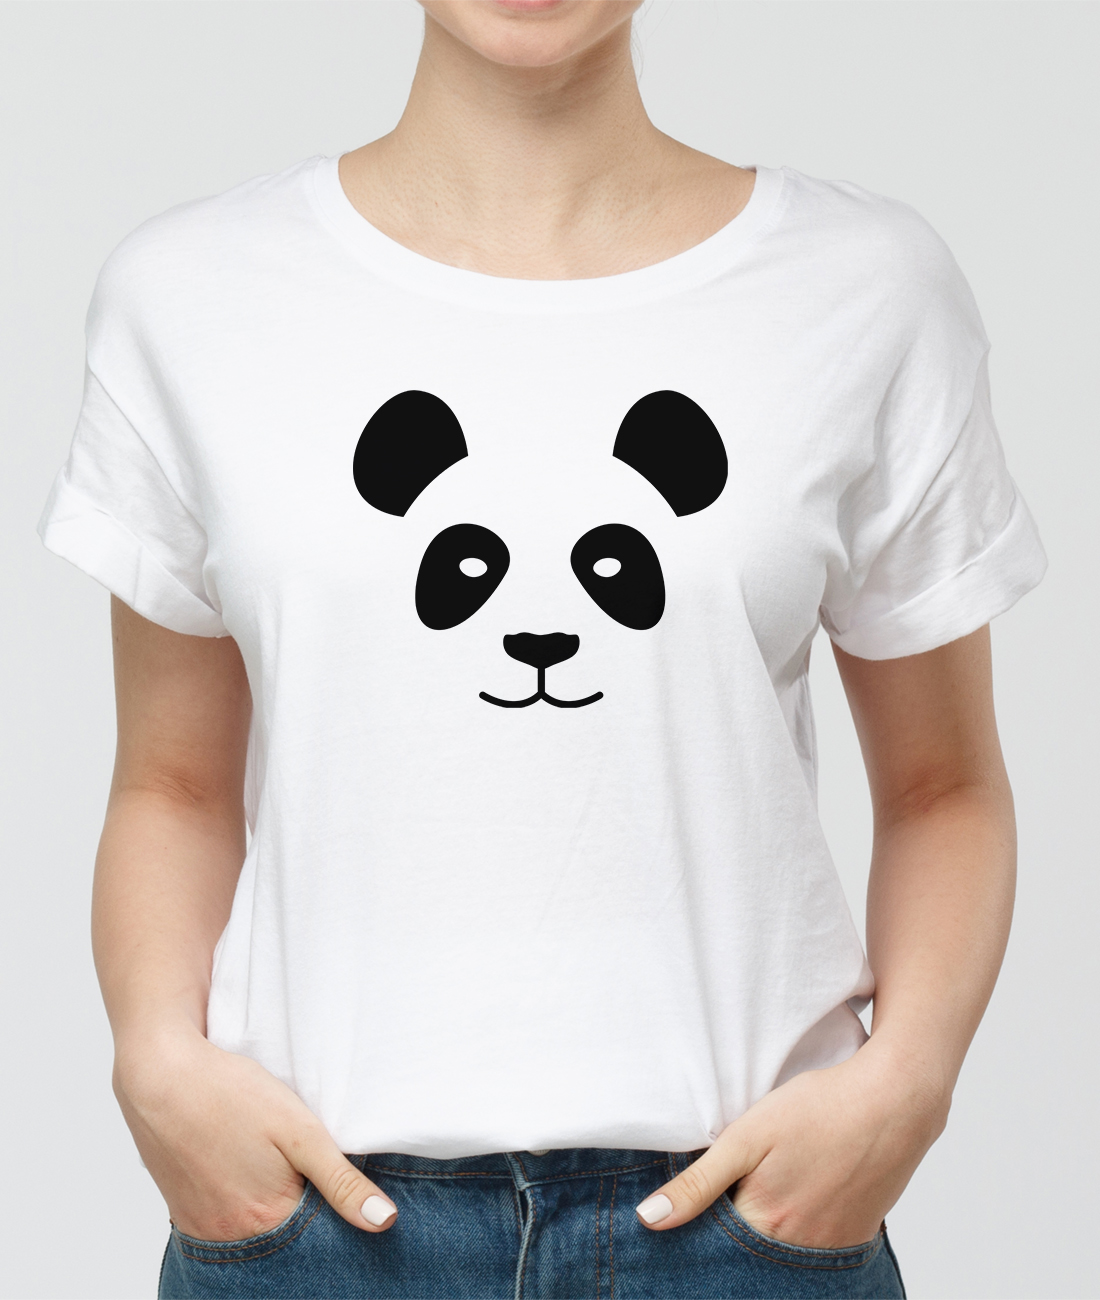 Panda tshirt